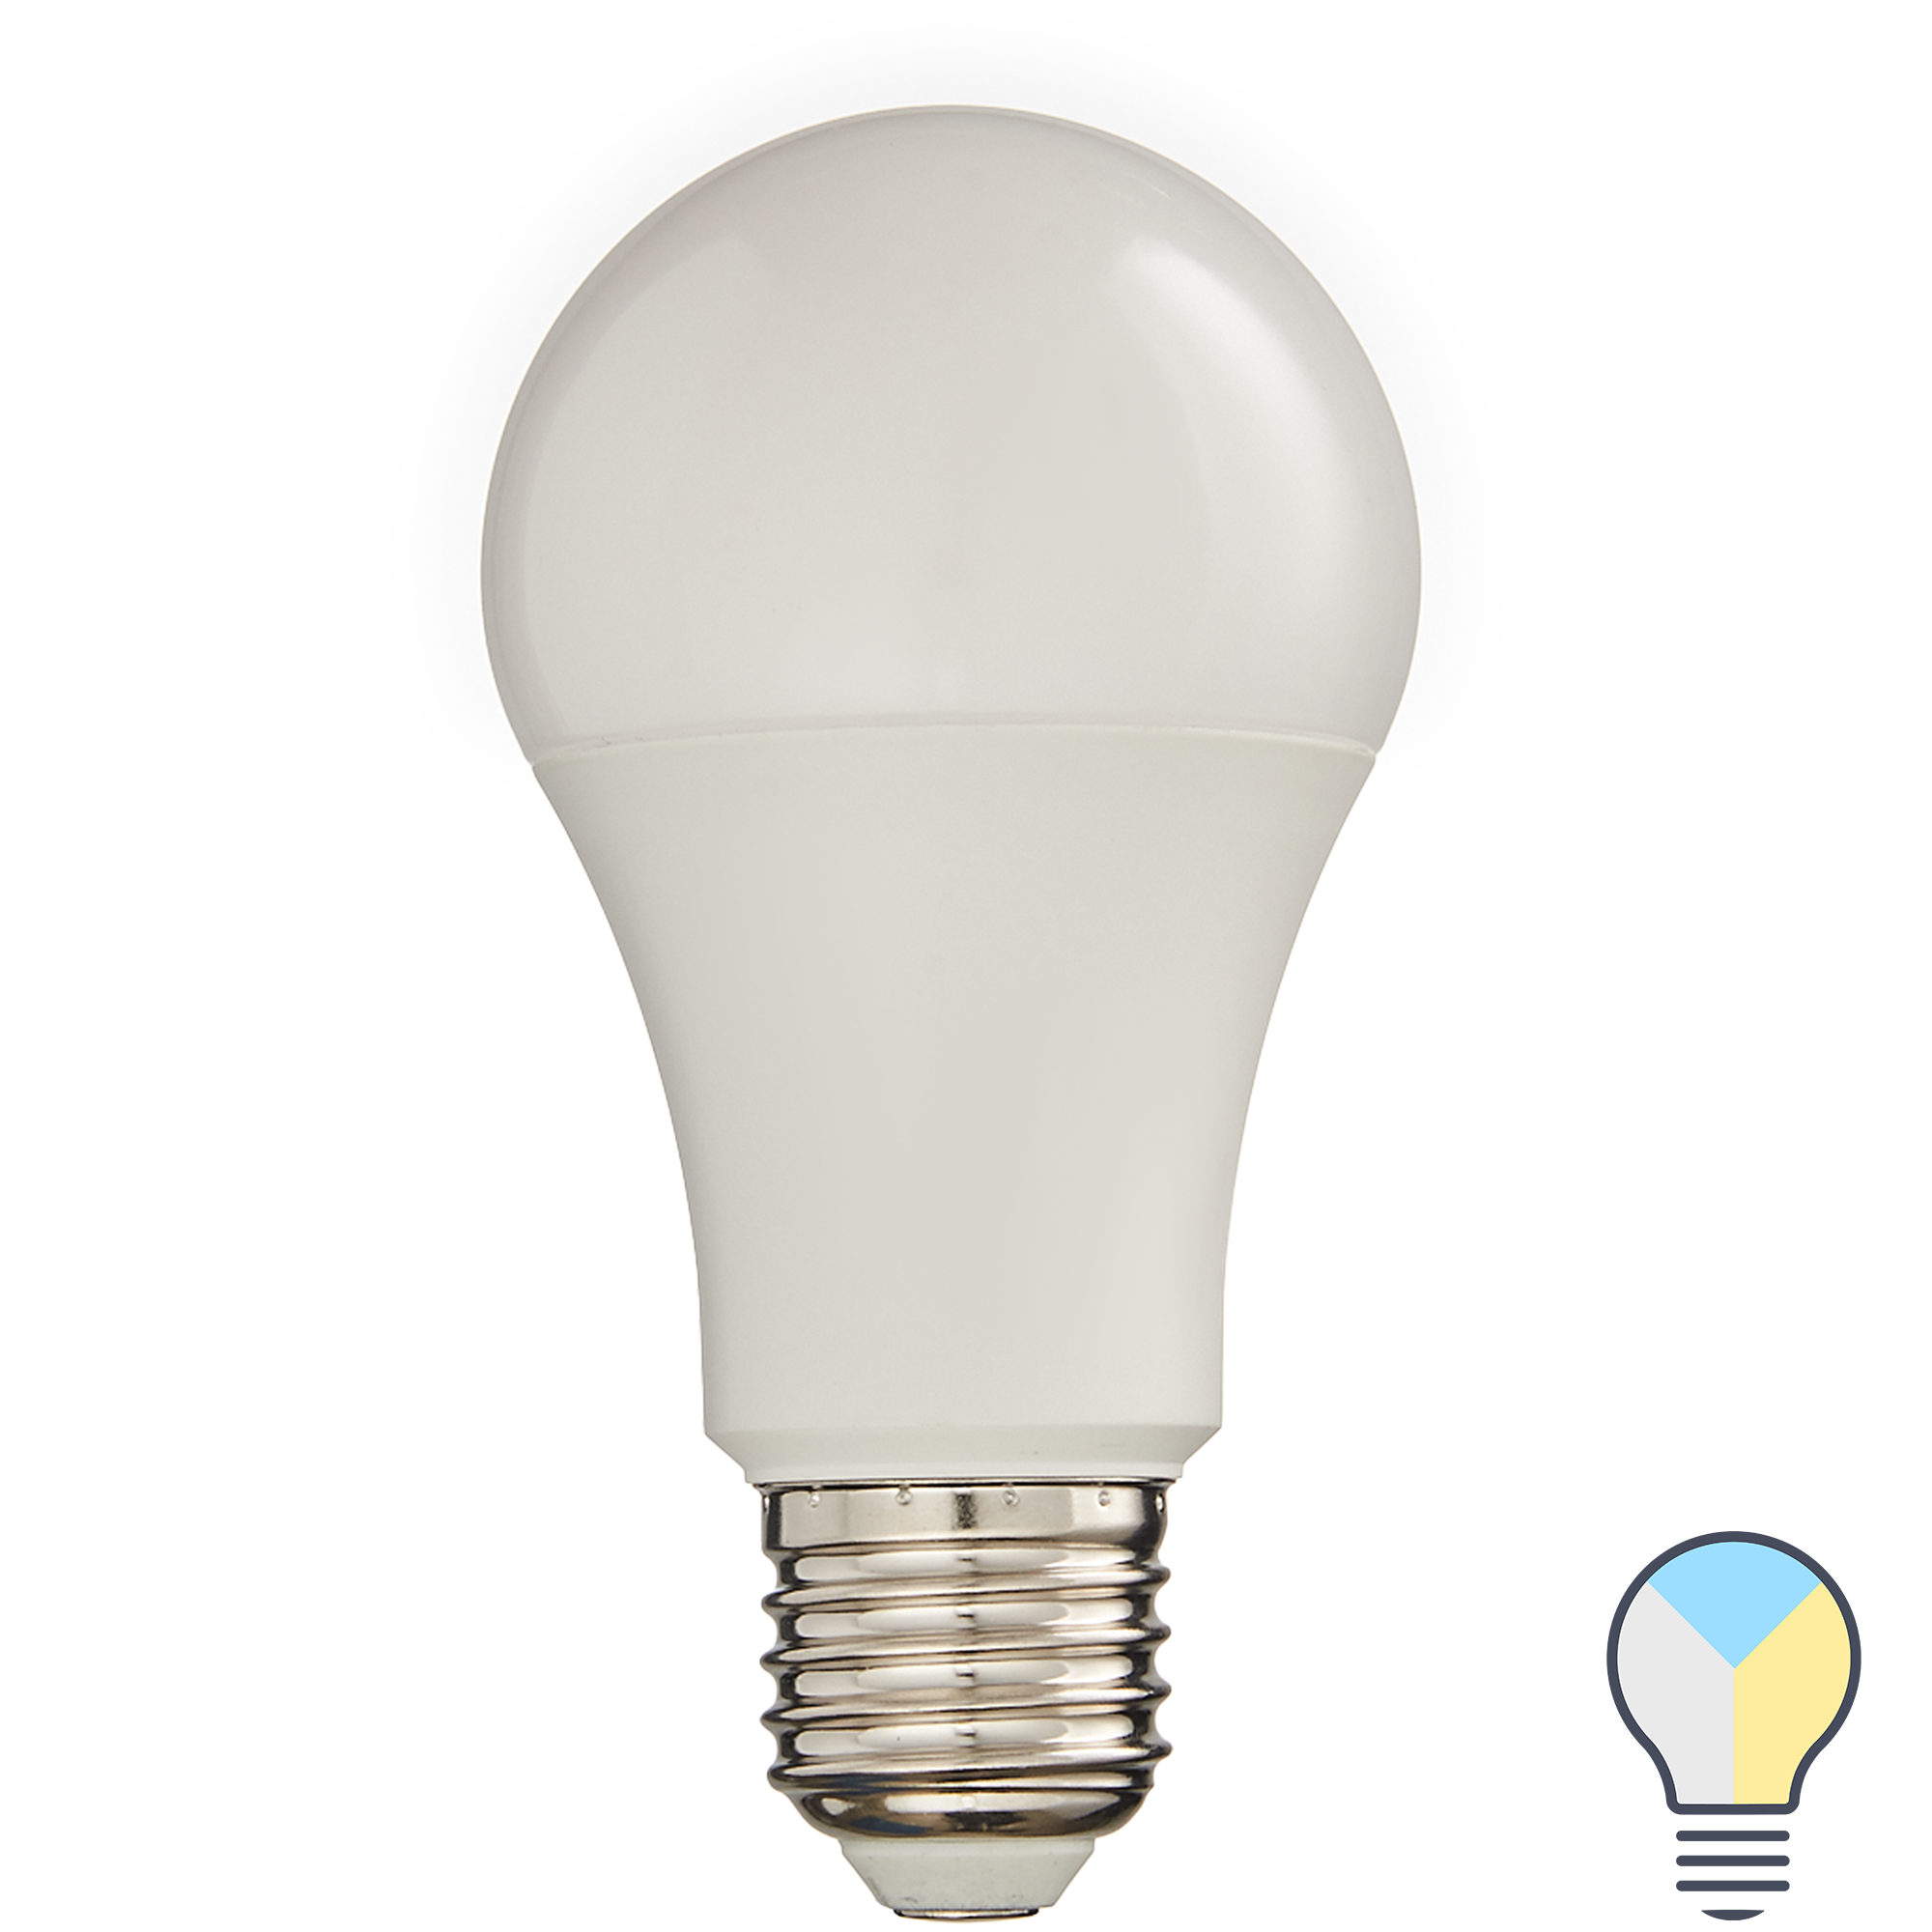 89143905 Лампа умная светодиодная Wi-Fi Osram Smart Plus E27 220-240 В 9.5 Вт груша матовая 1055 лм, изменение оттенков белого STLM-0079046 LEDVANCE